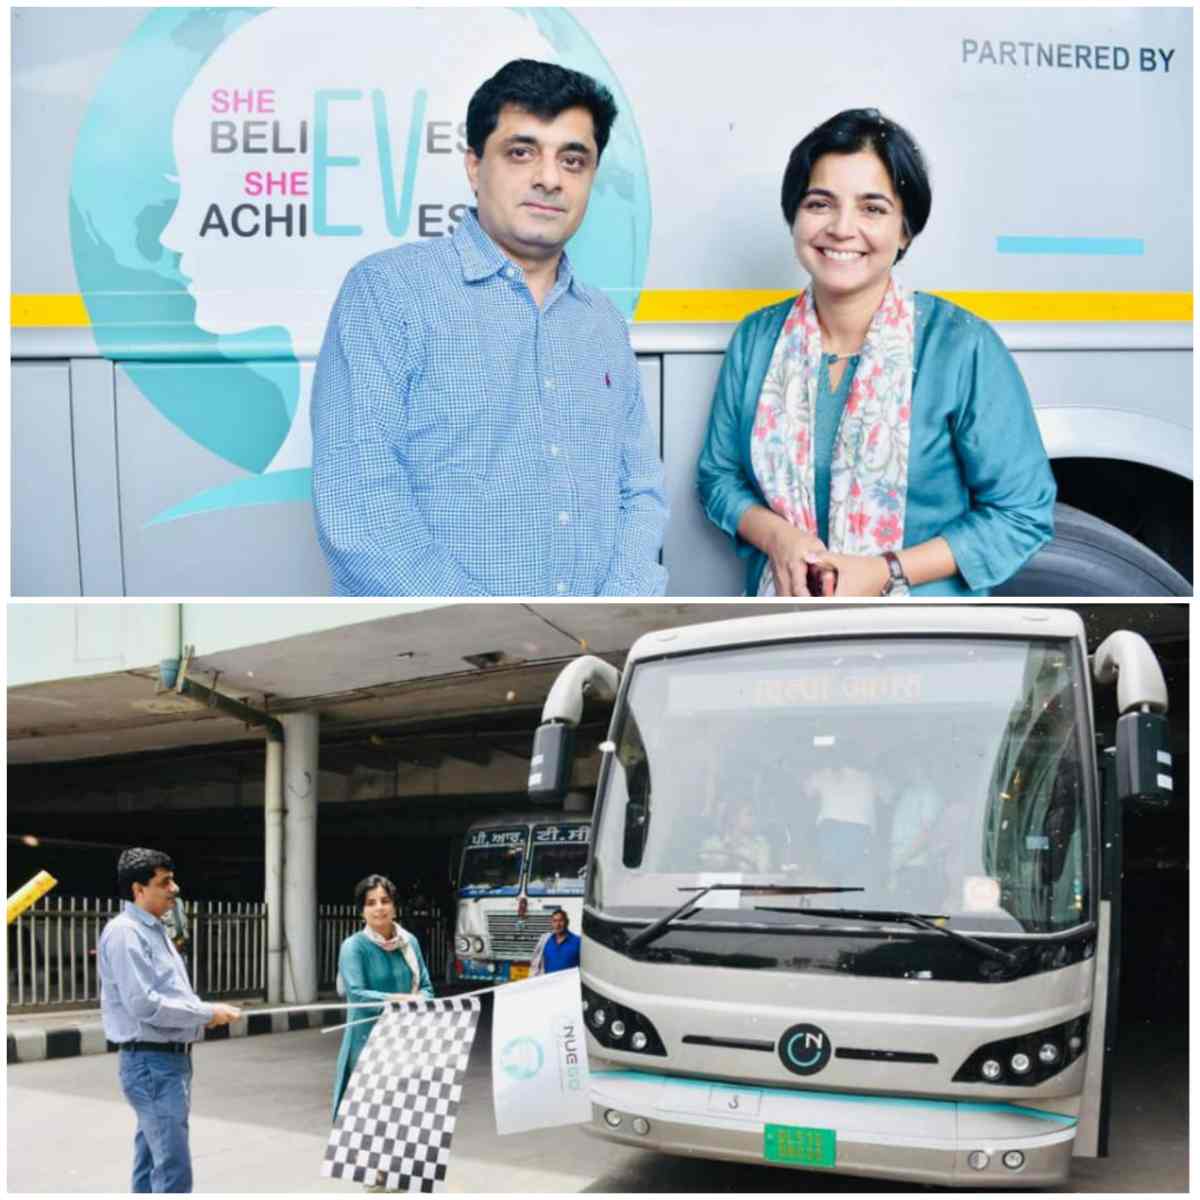 भारत के प्रमुख प्रीमियम इलेक्ट्रिक बस ब्रांड न्यूगो ने दुनिया की “पहली महिला इंटरसिटी बस” को रवाना किया